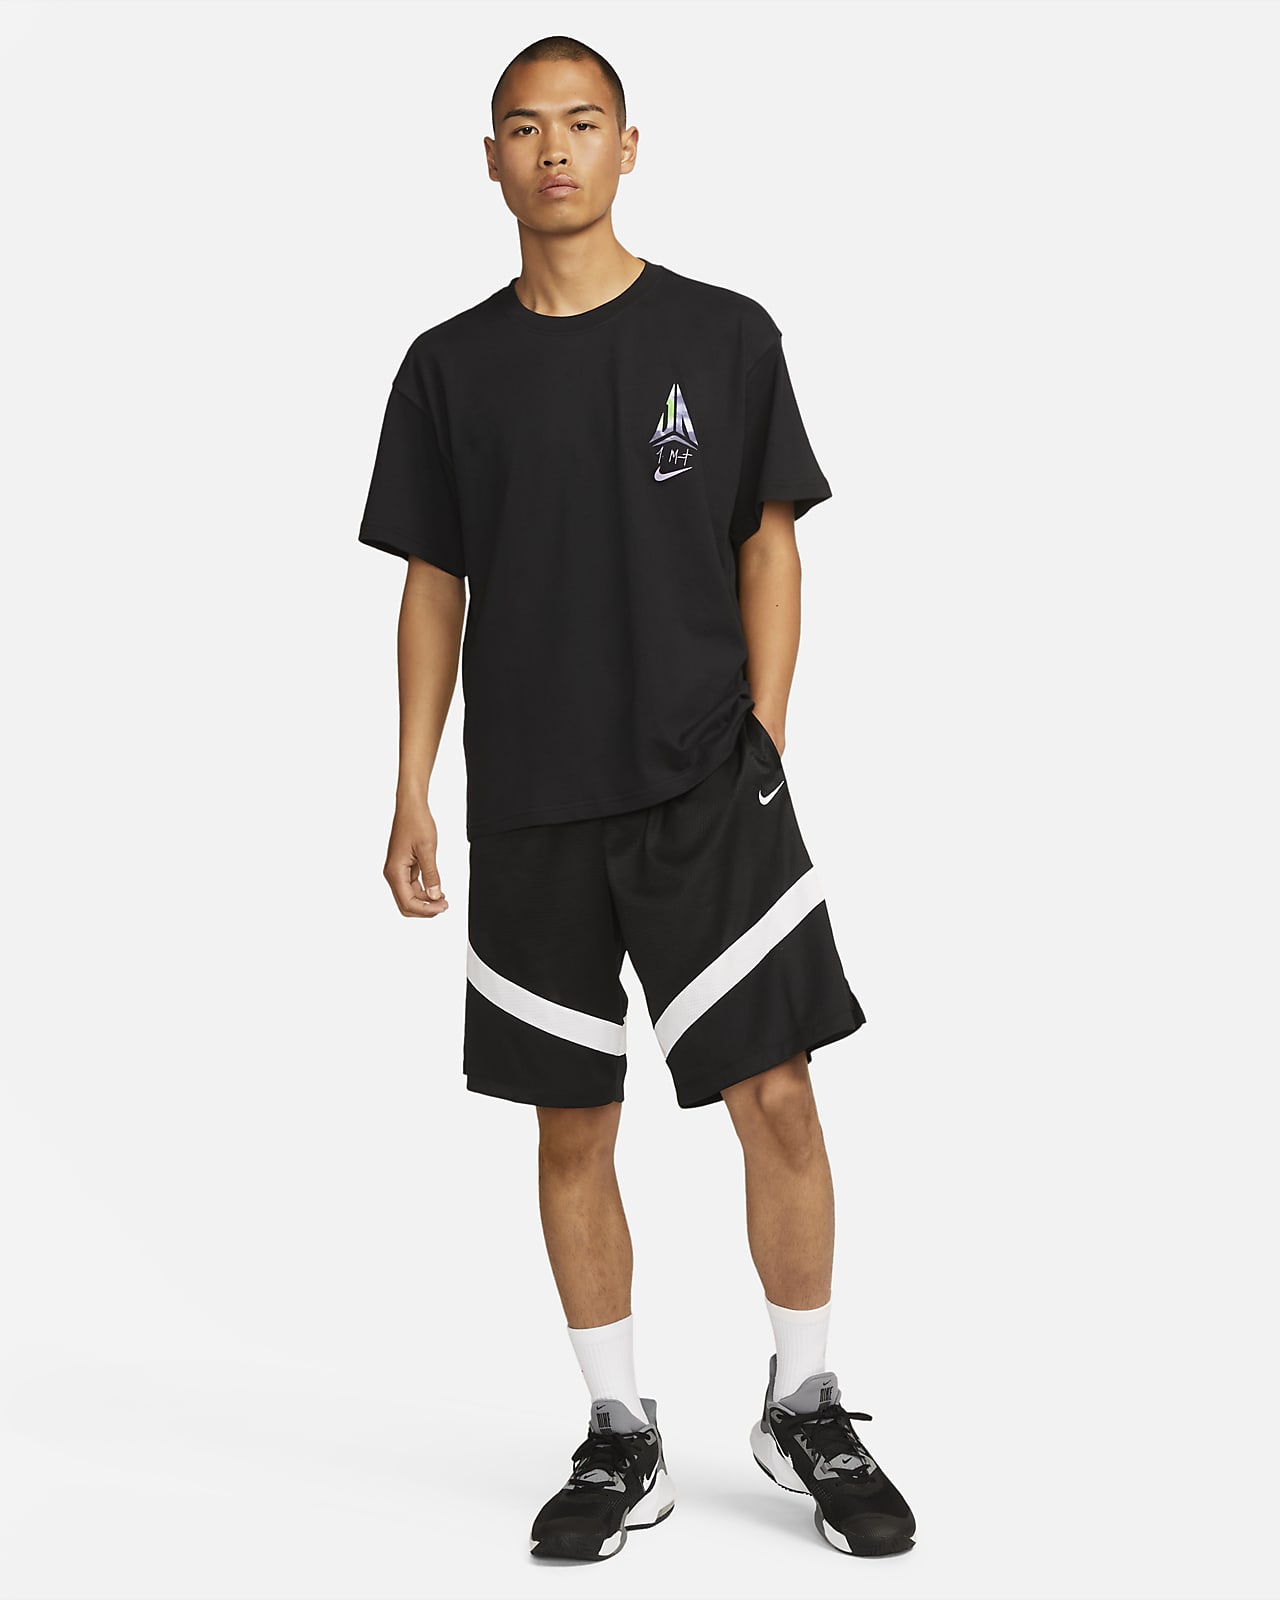 NIKE公式】ナイキ ジャ メンズ Max90 バスケットボール Tシャツ.オンラインストア (通販サイト)